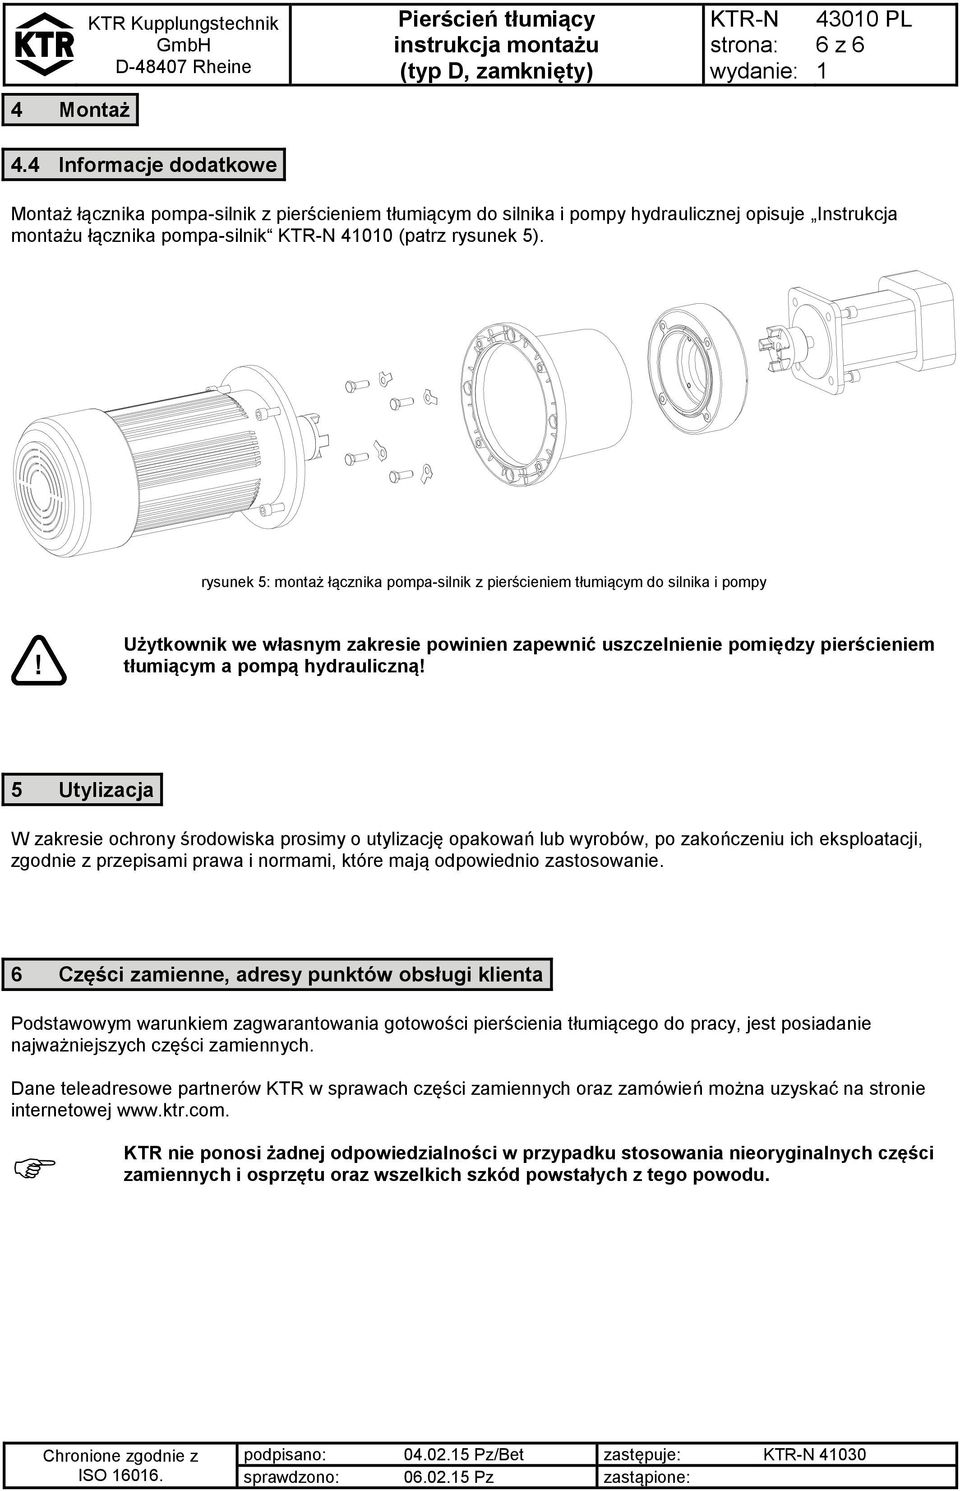 rysunek 5: montaż łącznika pompa-silnik z pierścieniem tłumiącym do silnika i pompy Użytkownik we własnym zakresie powinien zapewnić uszczelnienie pomiędzy pierścieniem tłumiącym a pompą hydrauliczną